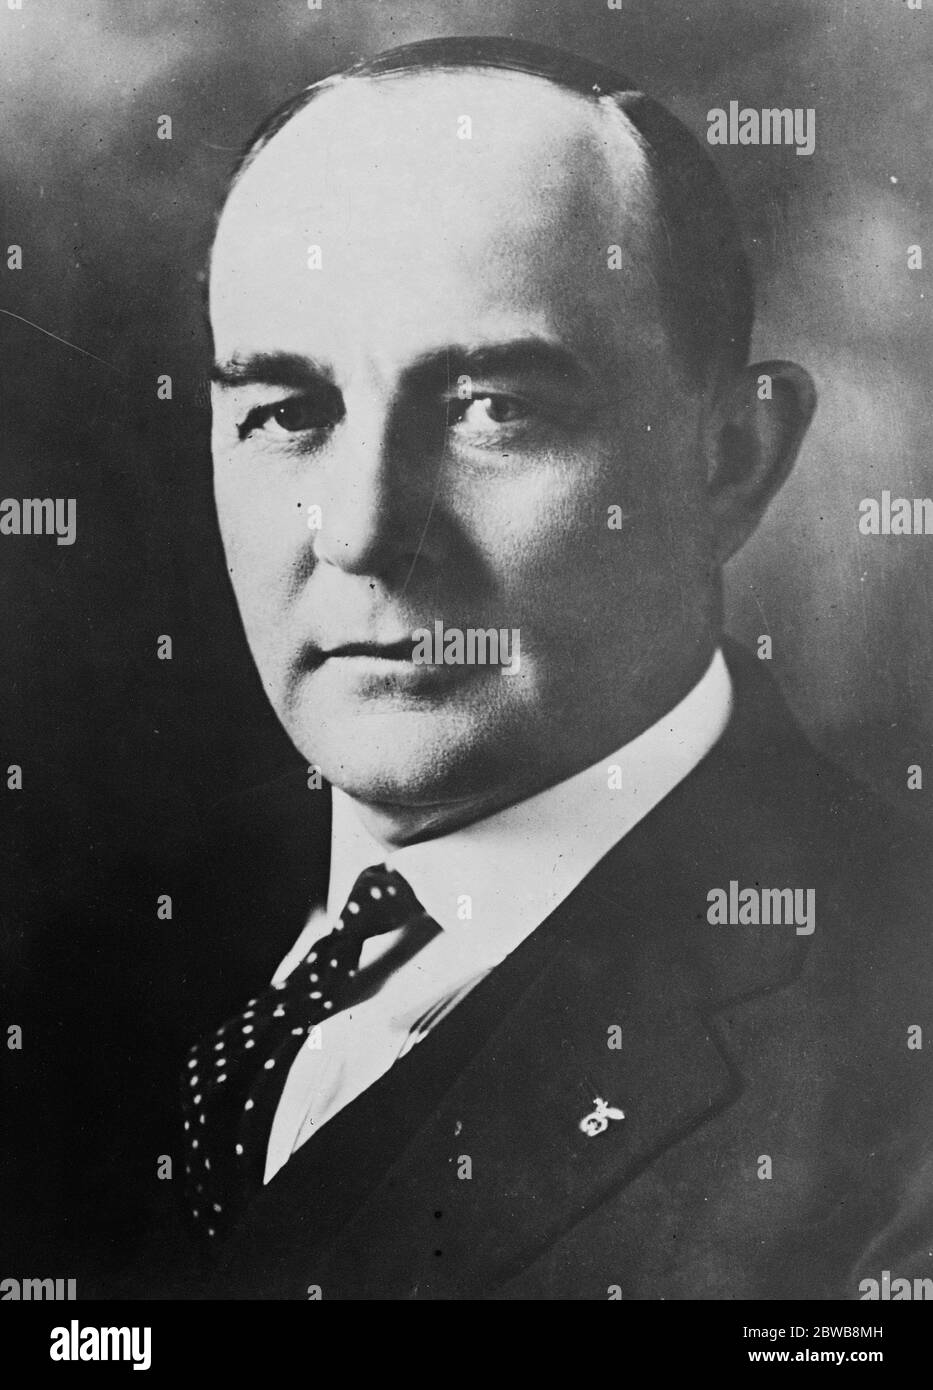 Arrestation d'un gouverneur U S ordonnée . Le gouverneur Jonathan M Davis du Kansas est immédiatement mis en détention son successeur, M. Paulen , est inauguré au poste de gouverneur . 12 janvier 1925 Banque D'Images